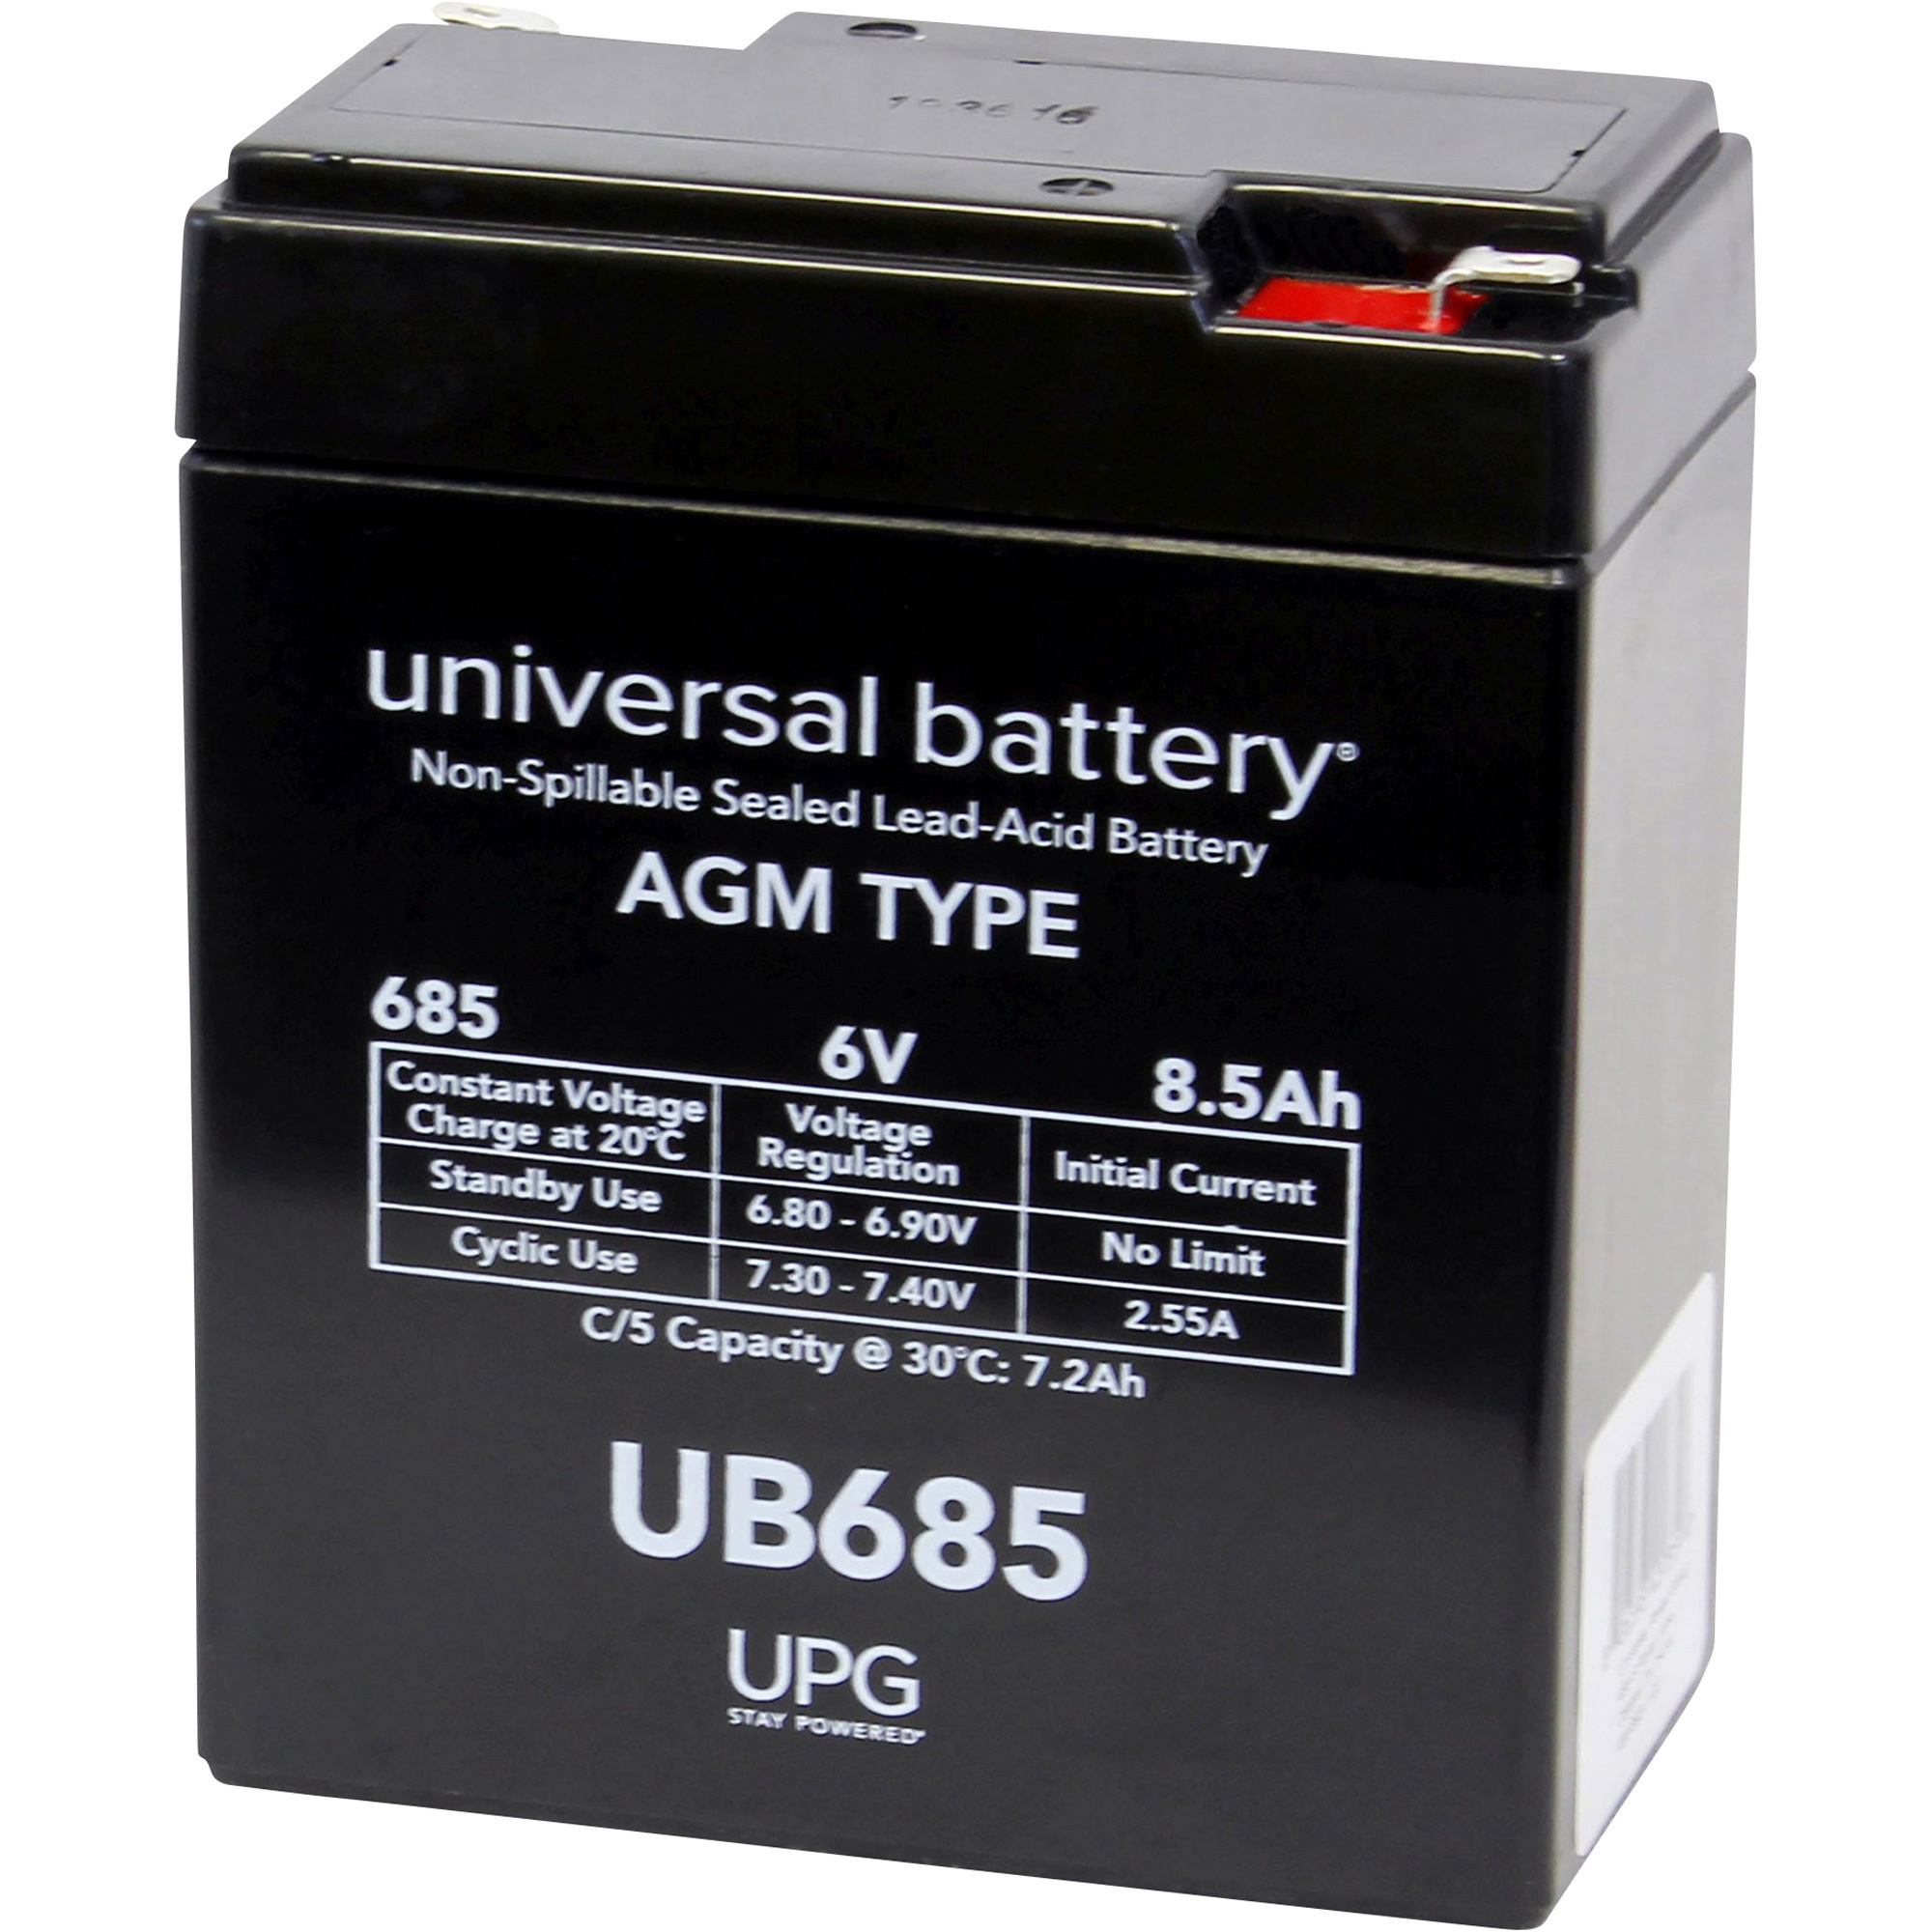 UPG Sealed Lead-Acid Battery, 6V, 8.5 Amps, Model UB685